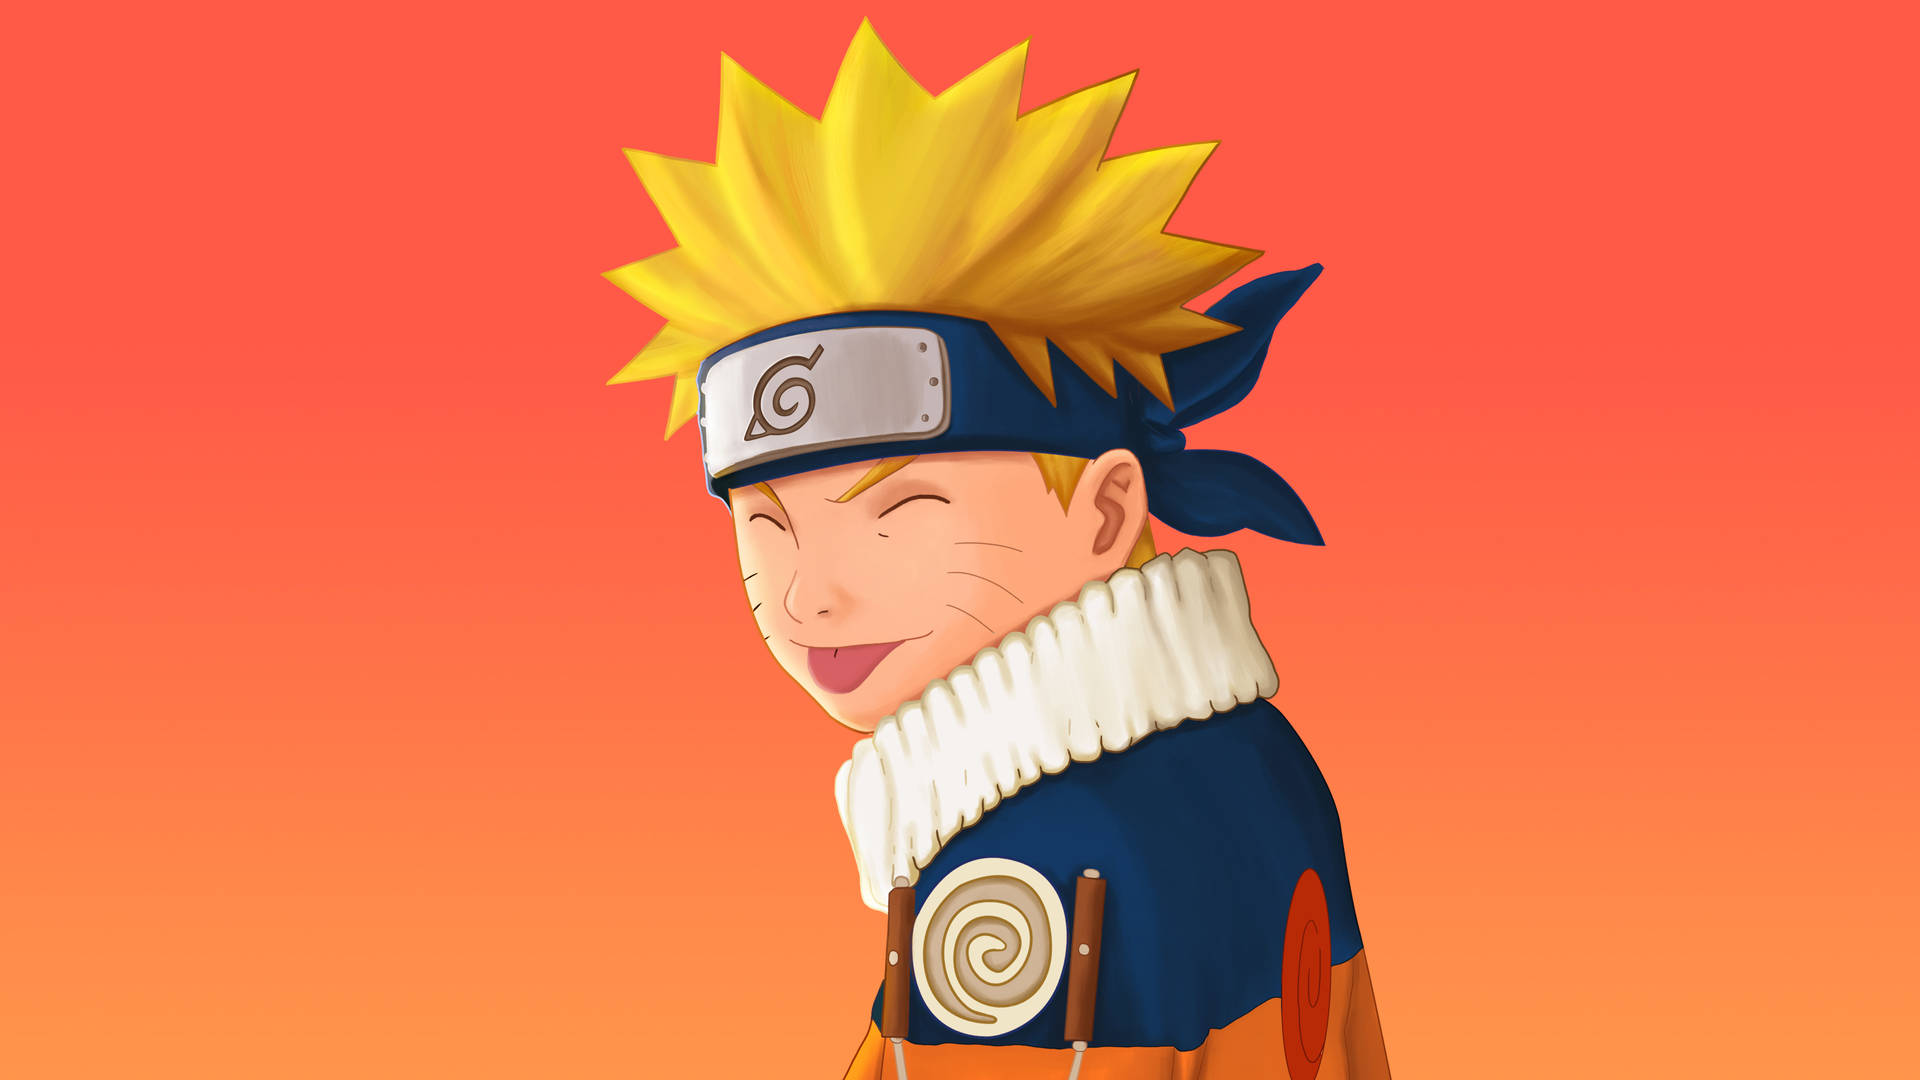 Hình nền Naruto 4k cho máy tính sẽ làm bạn sửng sốt với độ phân giải và độ tương phản hình ảnh vô cùng hoàn hảo. Bộ sưu tập của chúng tôi cập nhật thường xuyên để đem đến cho bạn những hình ảnh mới nhất và đẹp nhất về Naruto. Hãy lựa chọn và trang trí cho máy tính của mình một cách tuyệt vời!